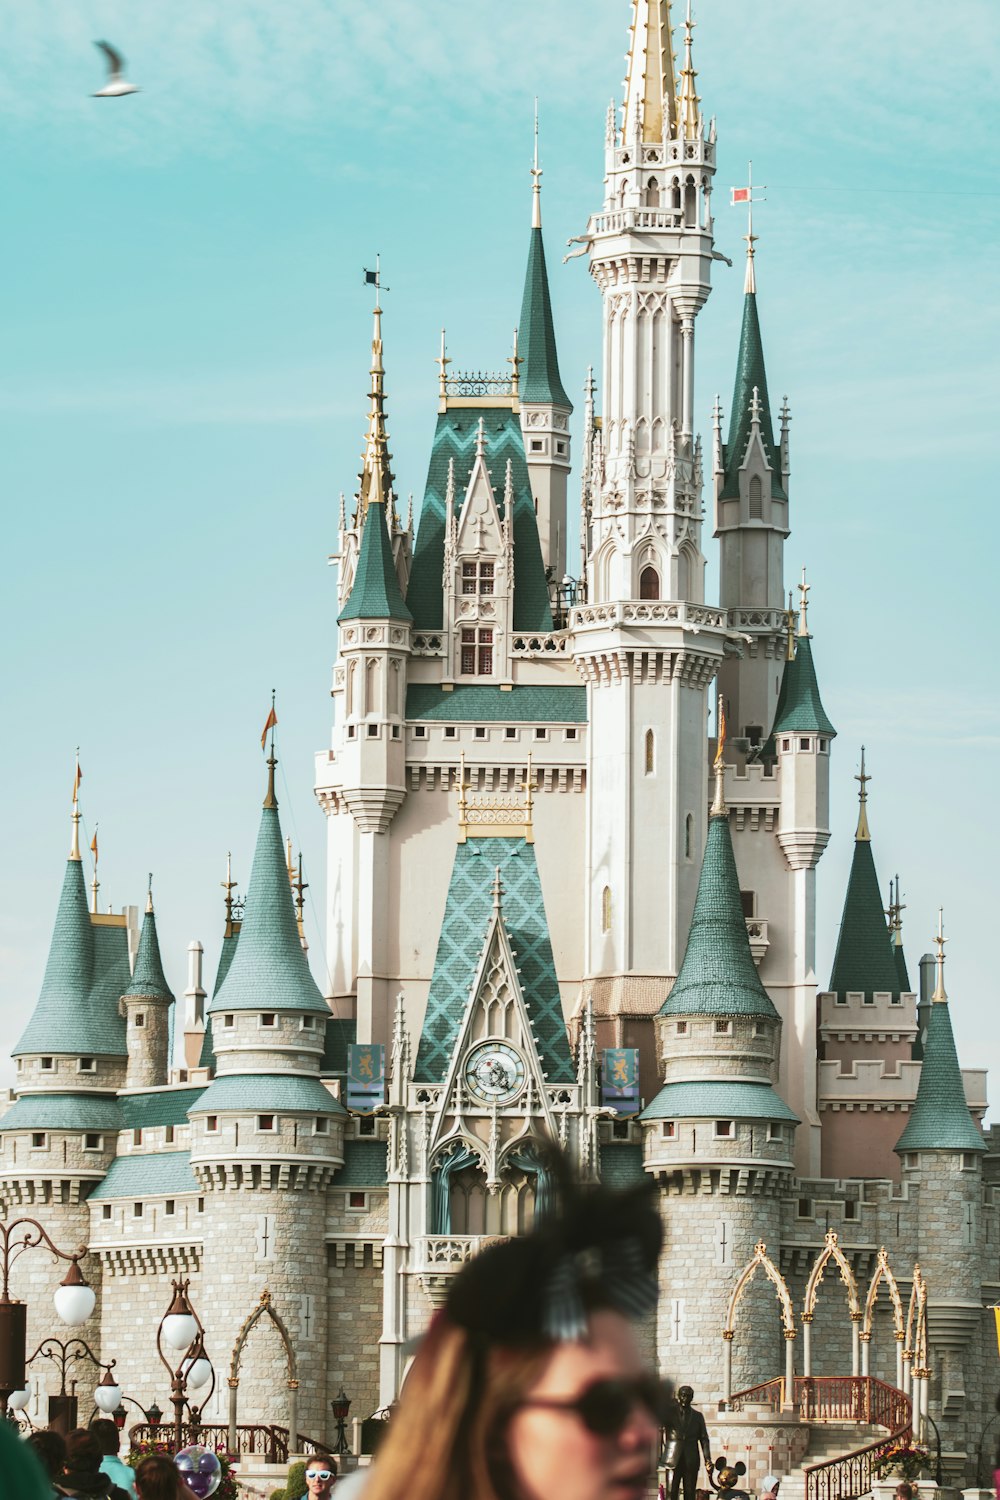 Menschen, die tagsüber in der Nähe von Disney World Cinderella Castle spazieren gehen